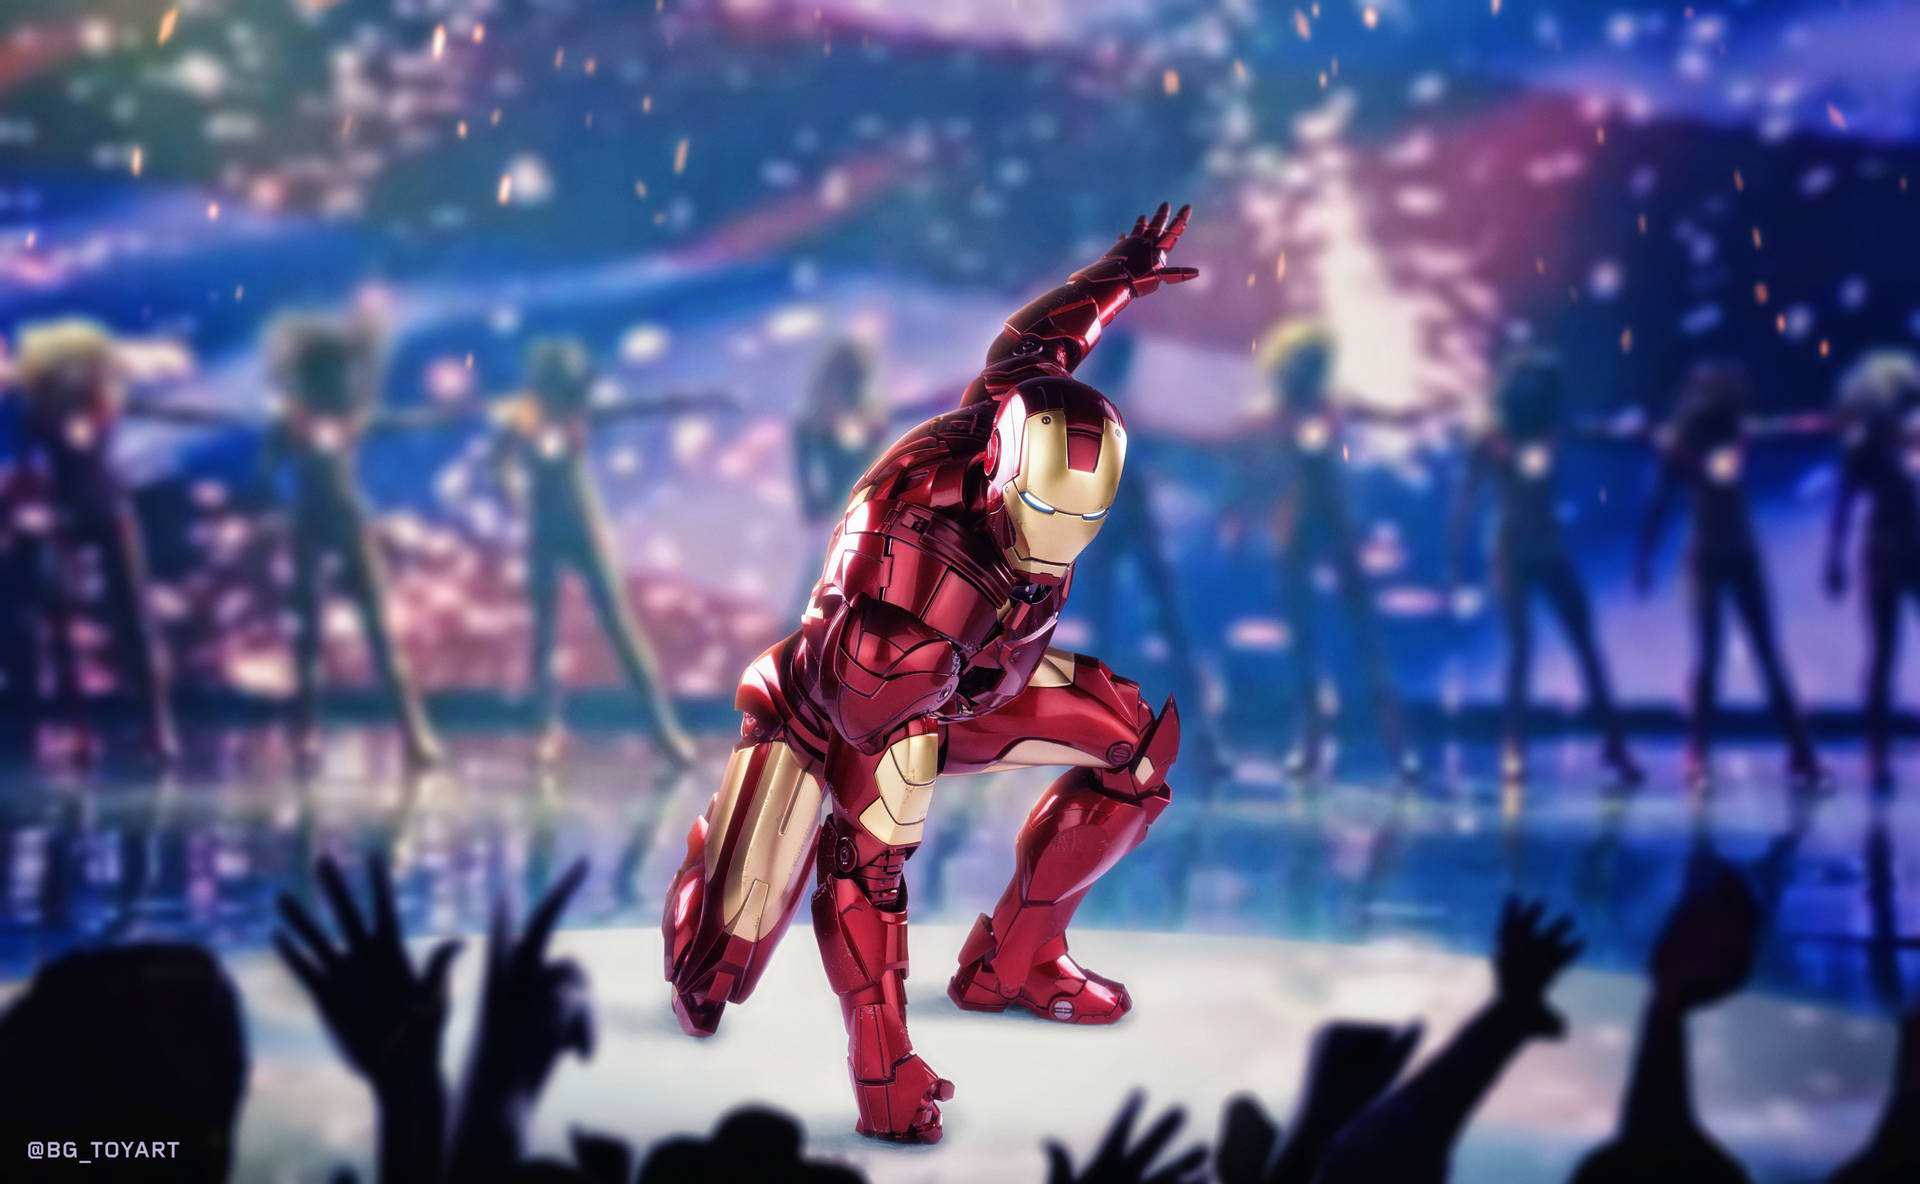 Cool Iron Man Landing On Stage Wallpaper